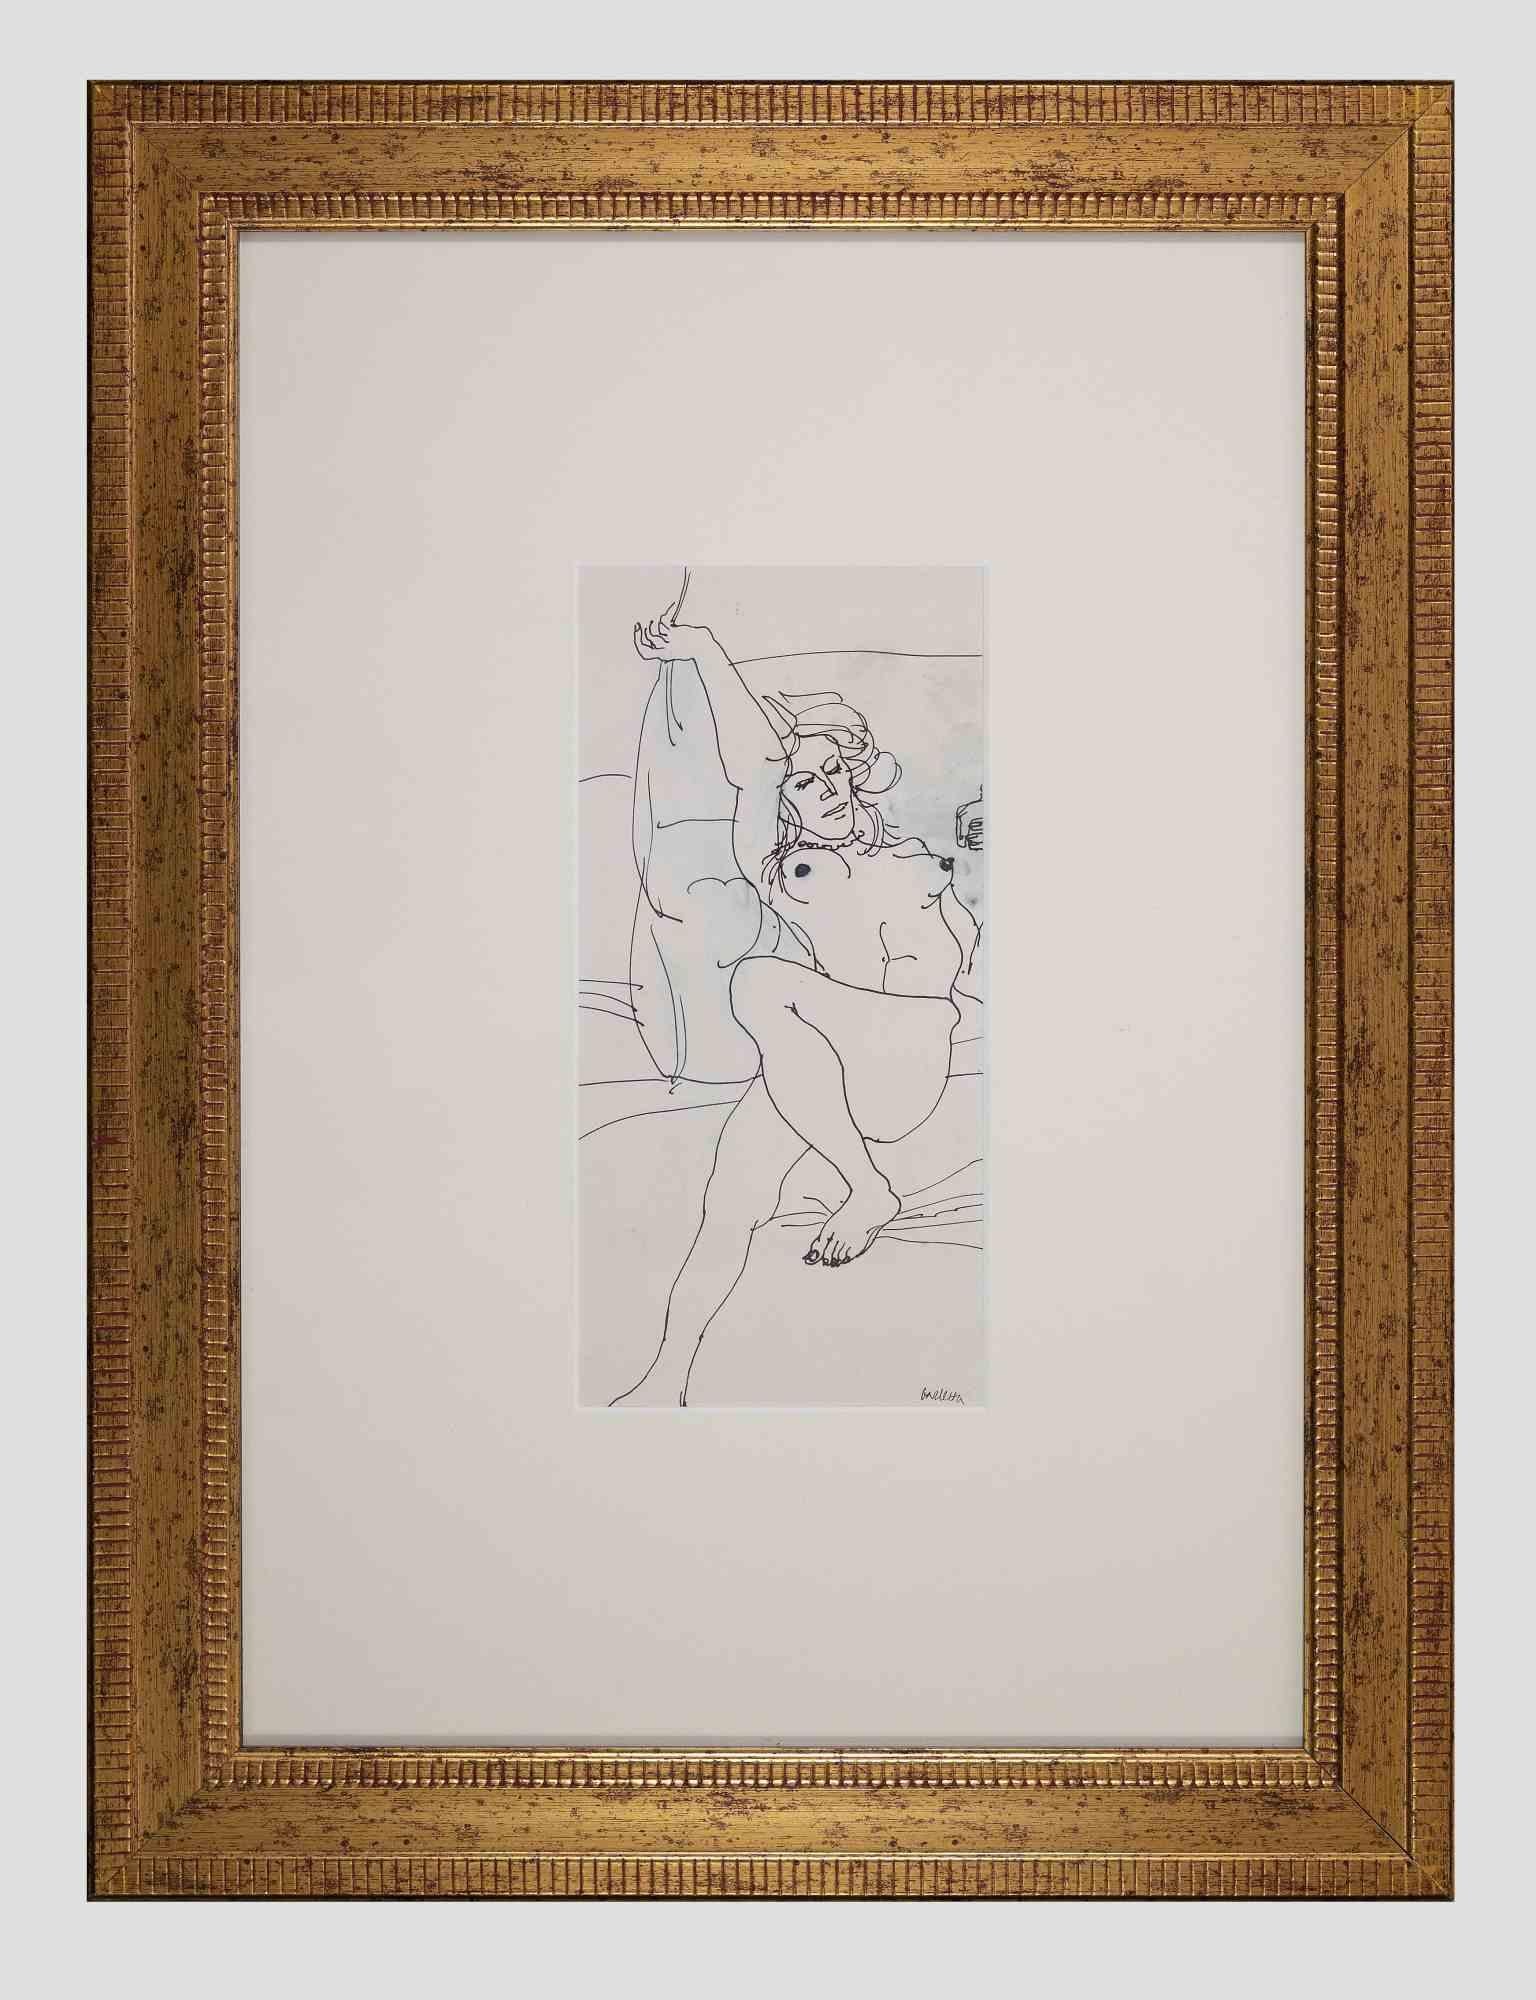 Der weibliche Akt ist ein Originalkunstwerk von Sergio Barletta aus den 1970er Jahren.

Tuschezeichnung auf Papier. Inklusive eines schönen vergoldeten Rahmens.

Handsigniert am unteren Rand.
